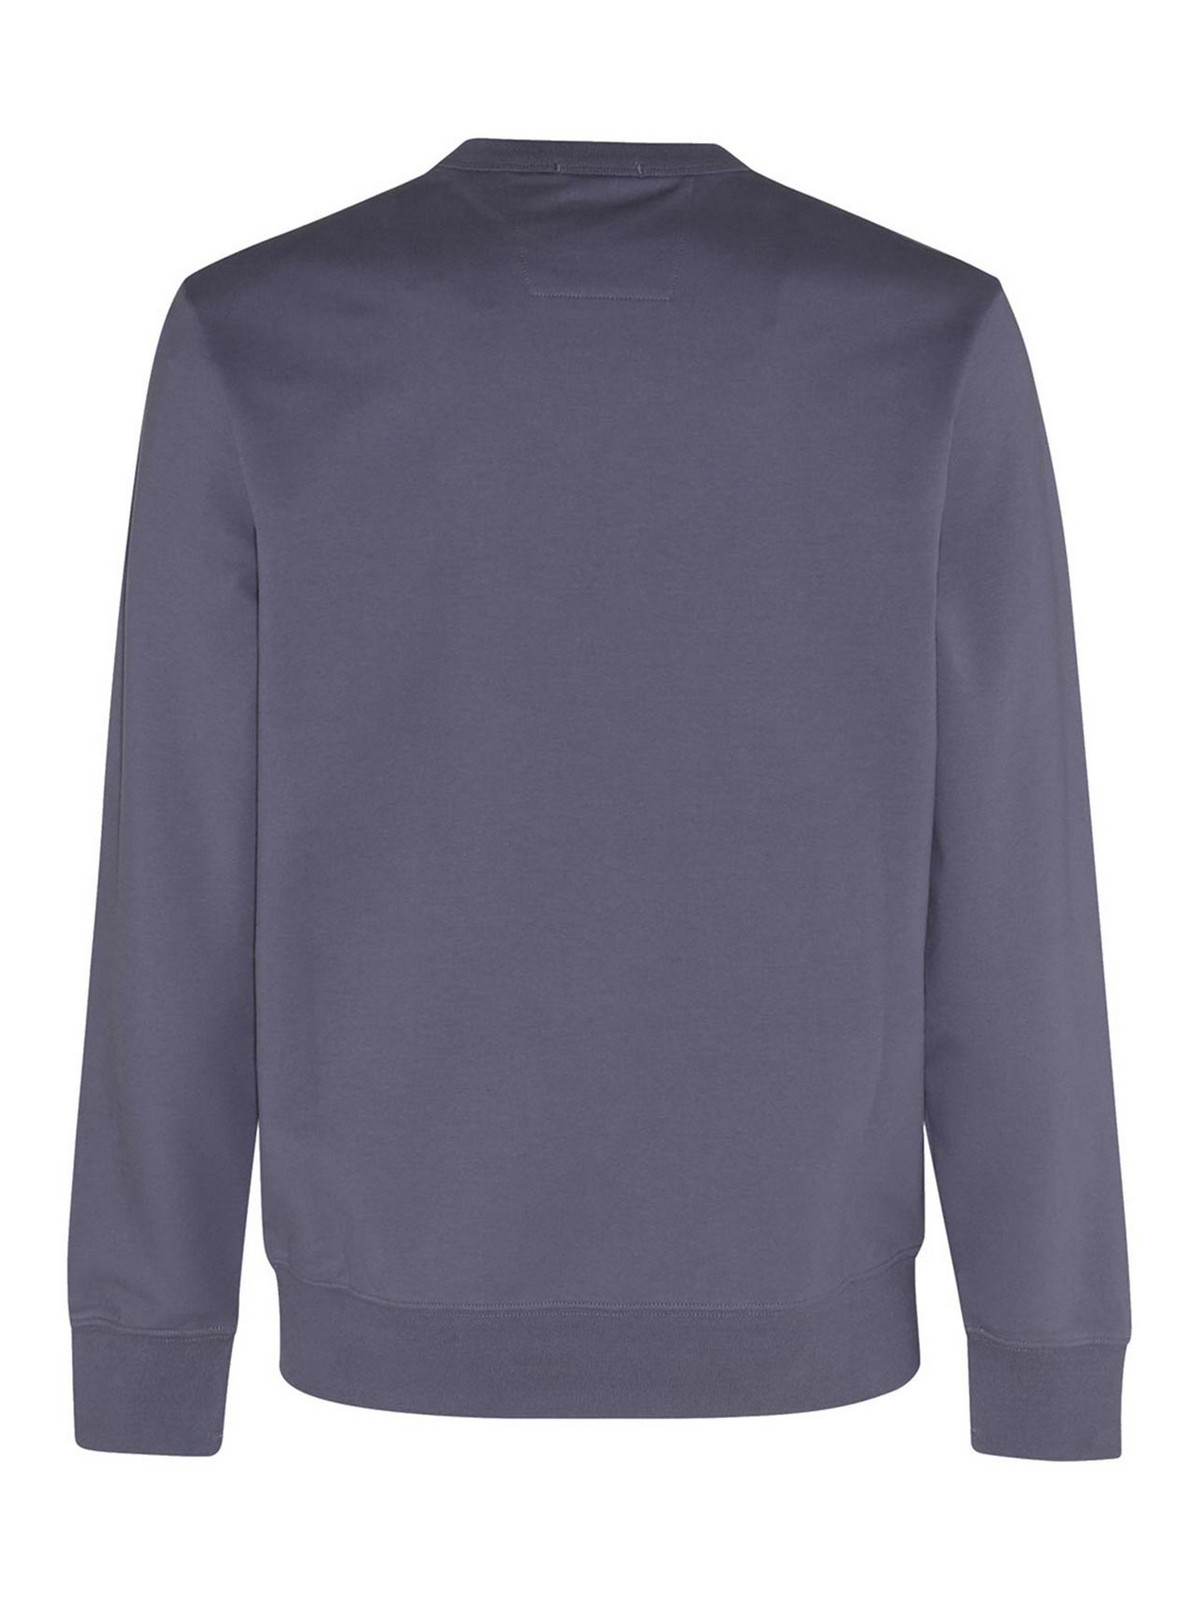 C.p. Company Ash Grey Cotton Metropolis Sweatshirt